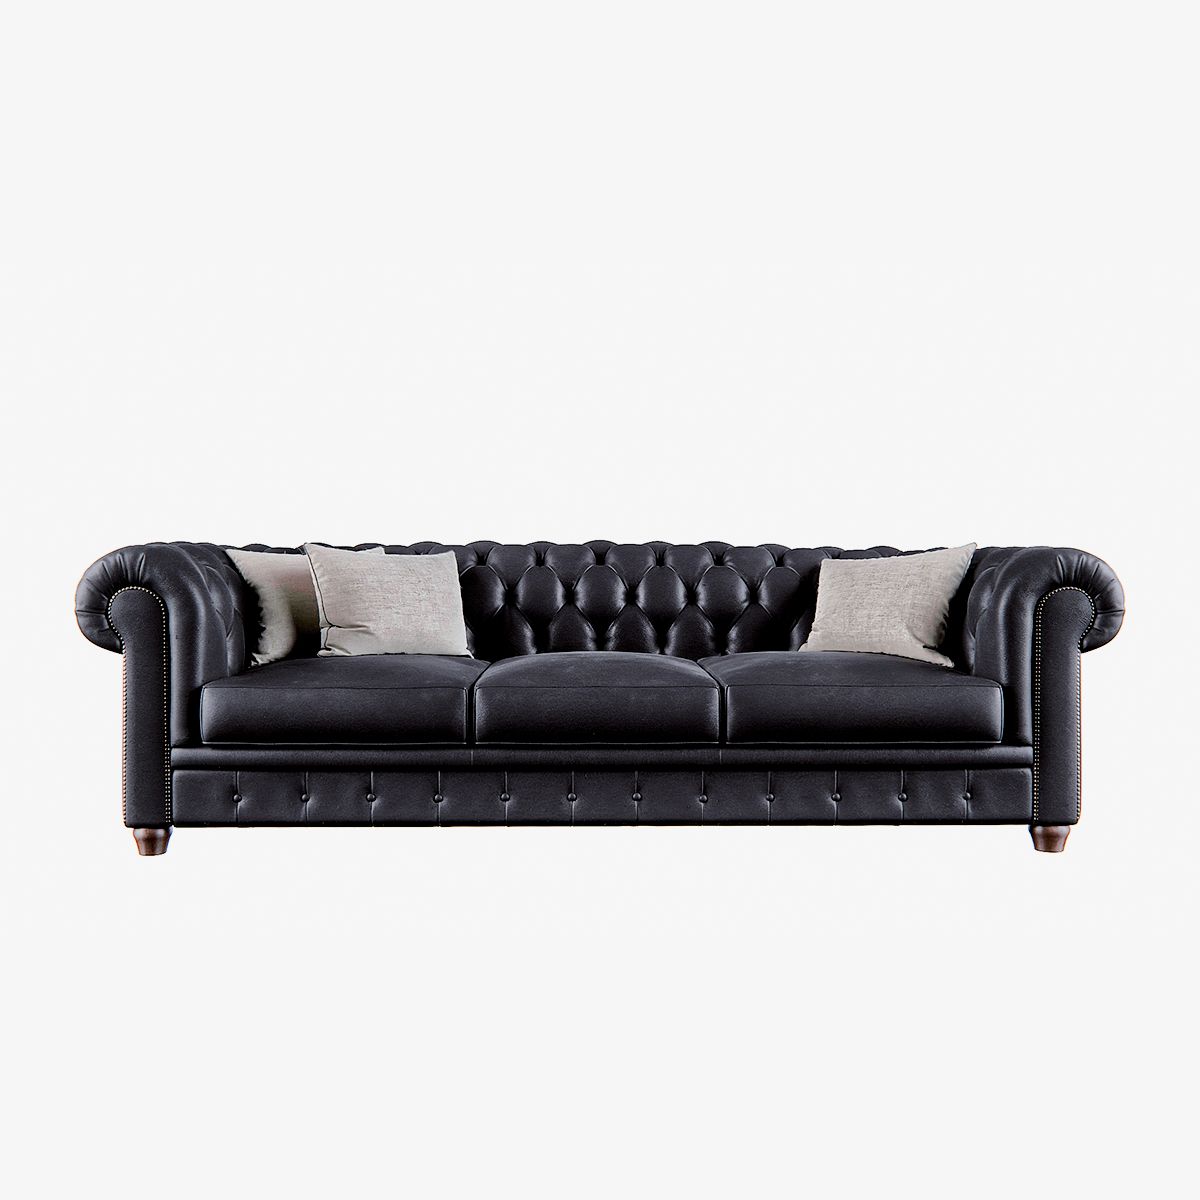  Length Sofa 